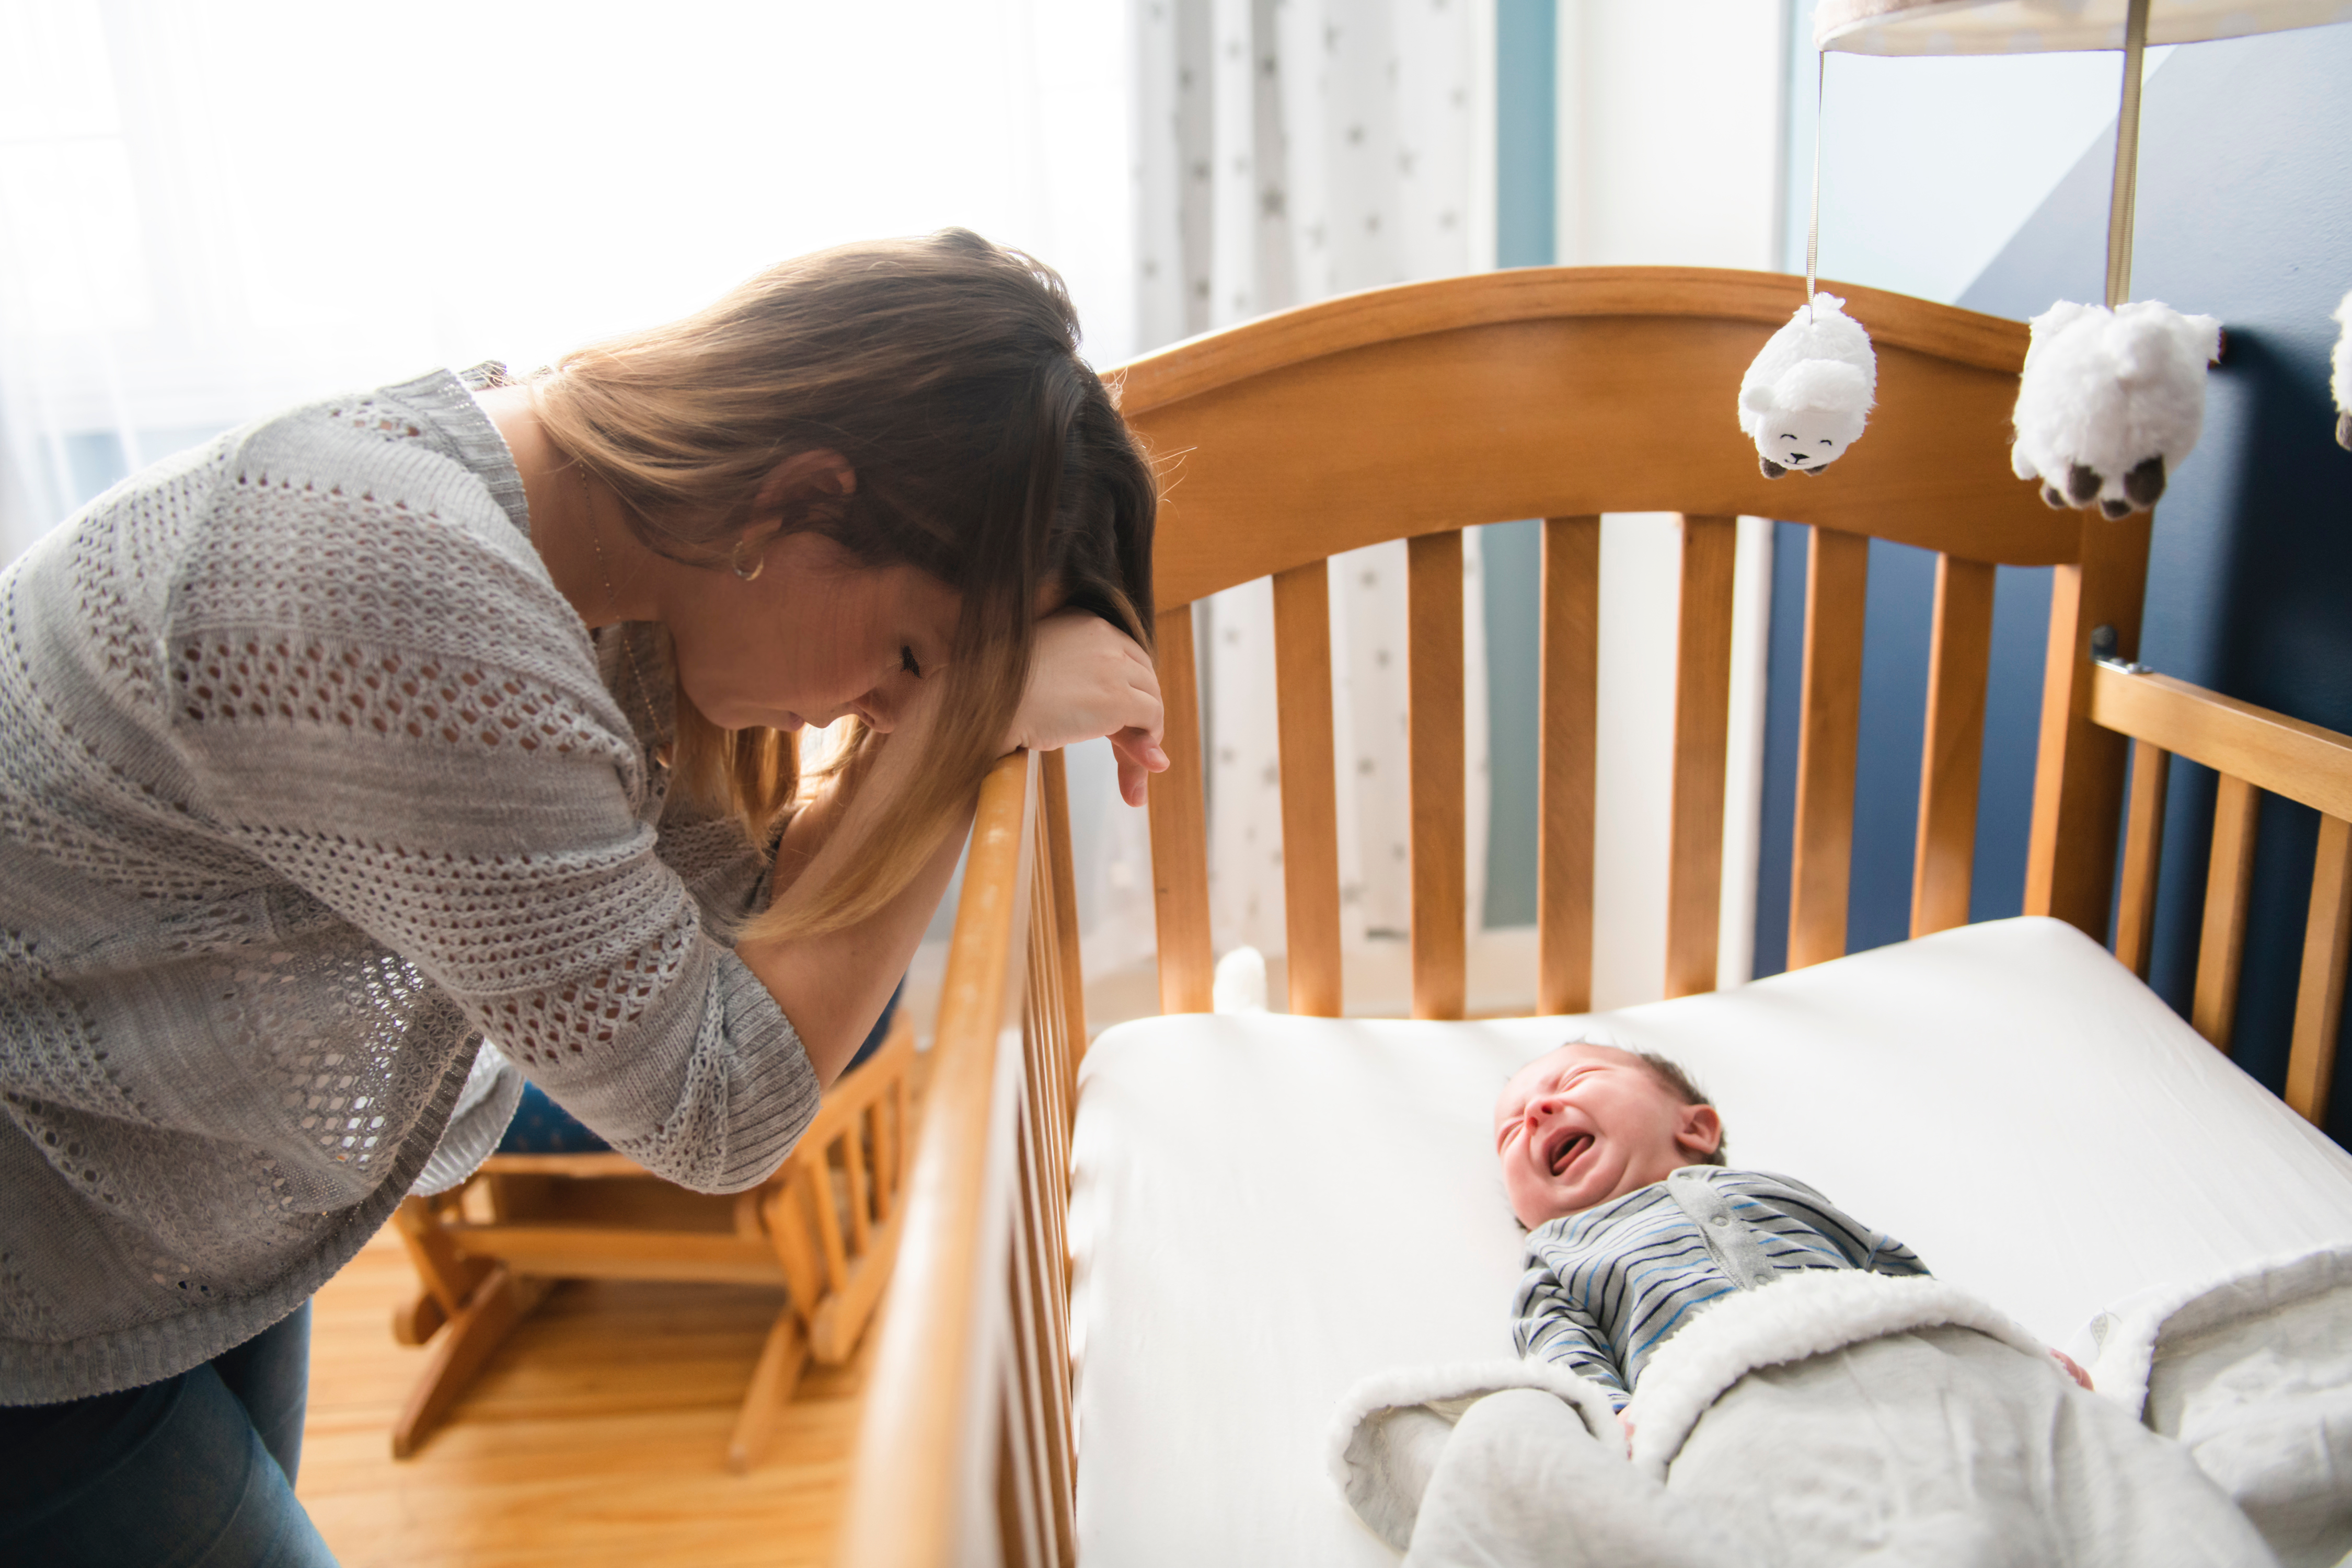 Une mère fatiguée avec un bébé en pleurs couché dans un lit d'enfant | Source : Shutterstock